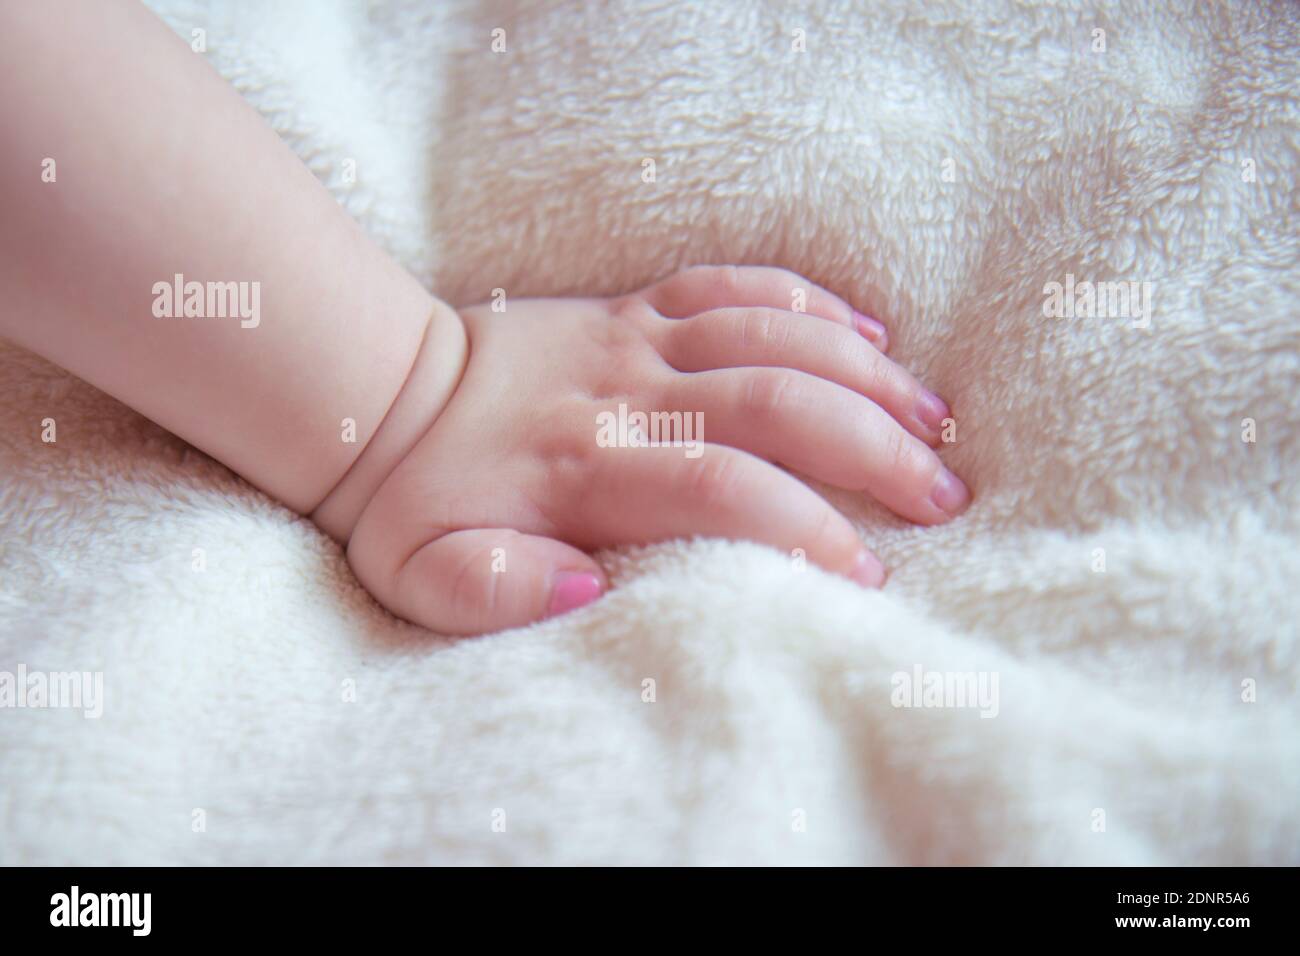 Main de bébé sur une couverture douce et moelleuse beige. Ongles sur la main d'une petite fille peint avec vernis à ongles rose Banque D'Images